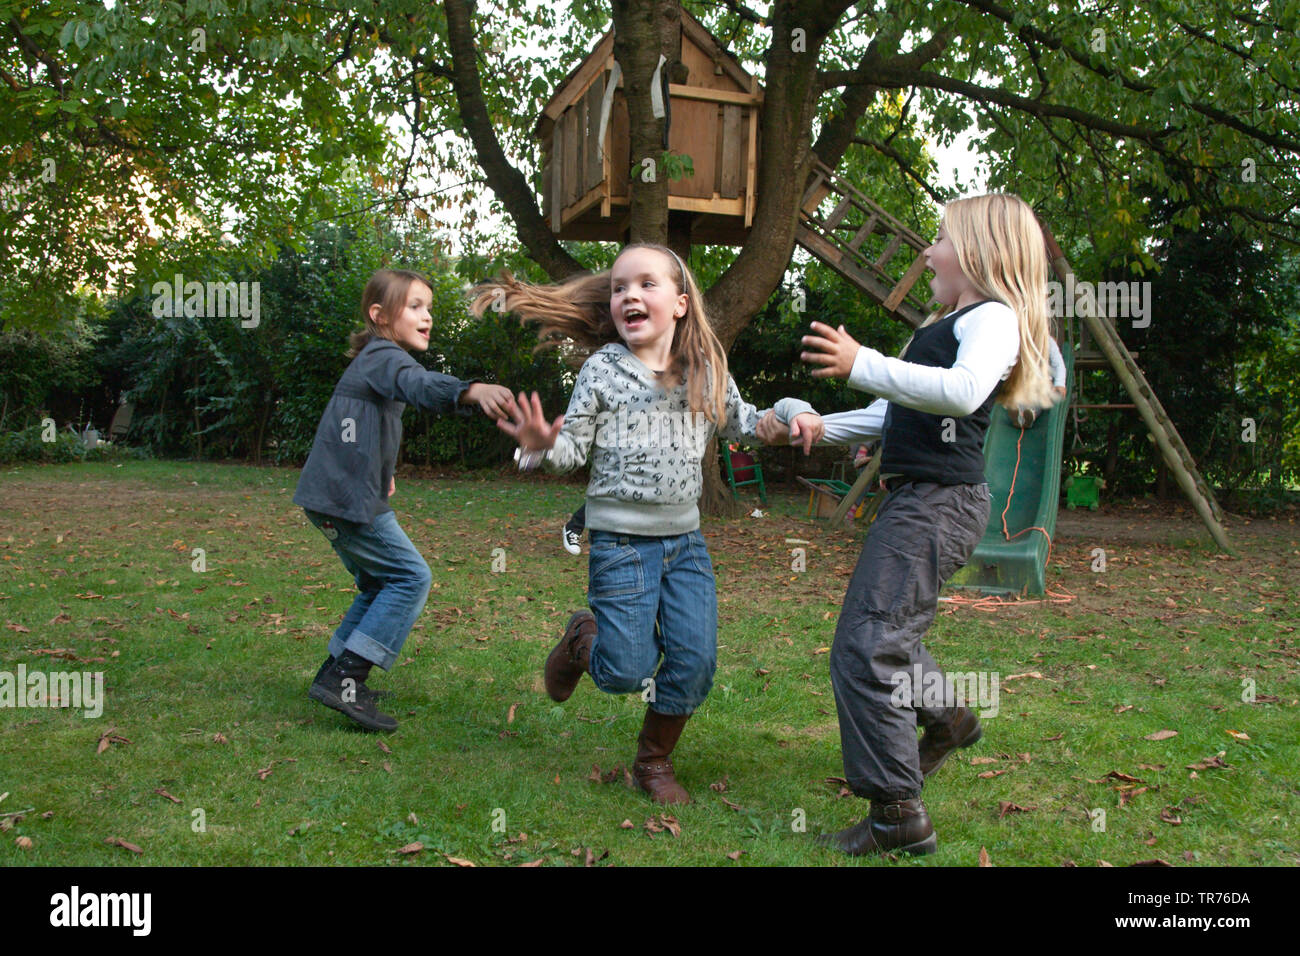 Trois enfants jouant frolicsome près d'une maison de l'arbre, Pays-Bas, Limbourg Banque D'Images